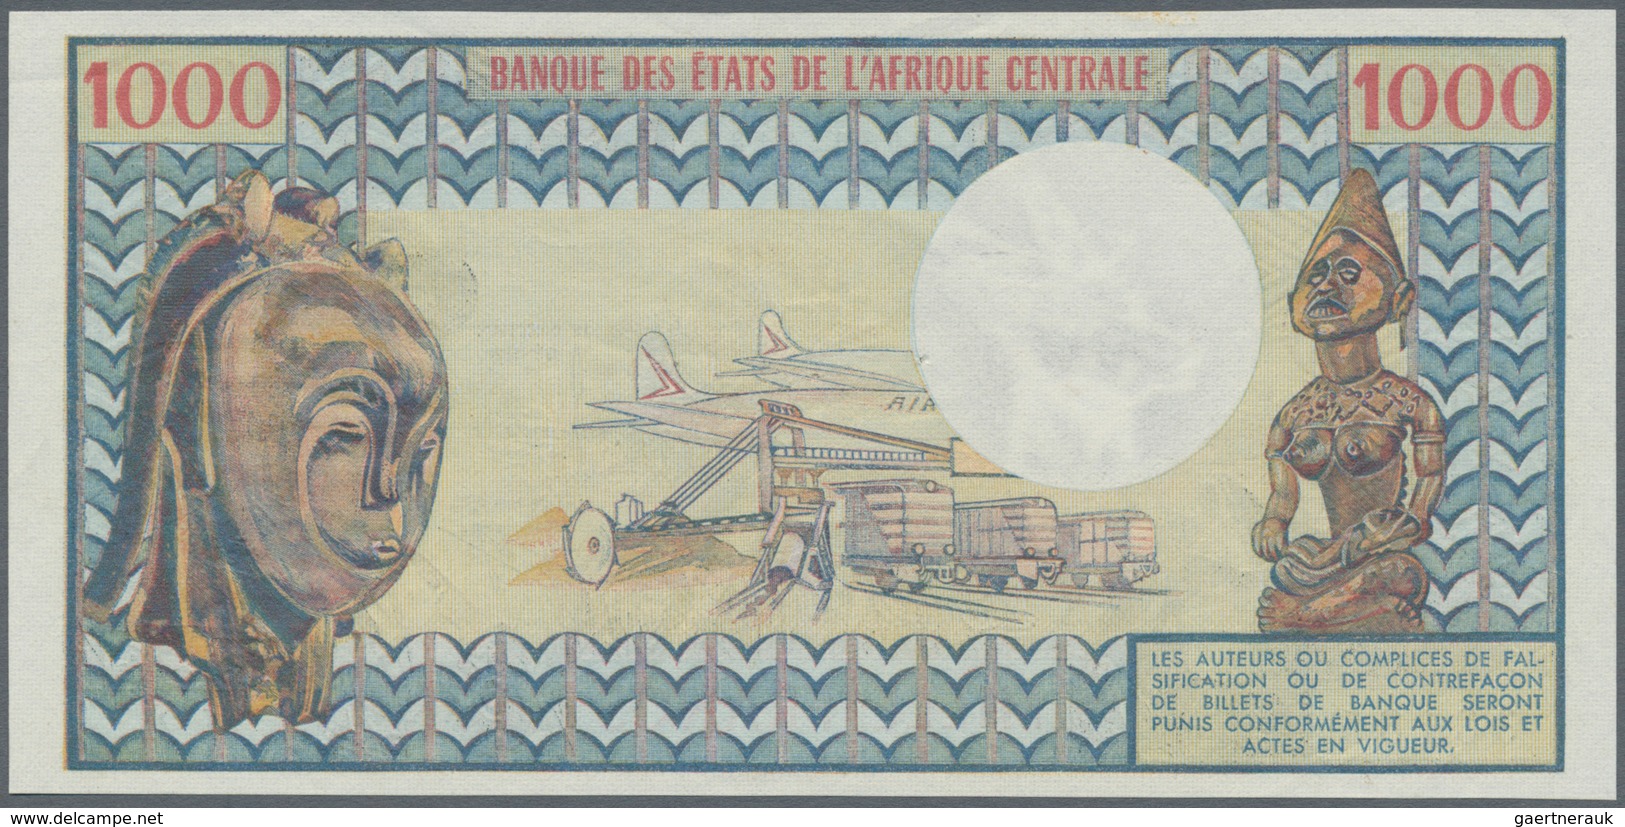 Central African Republic / Zentralafrikanische Republik: 1000 Francs ND(1974) P. 2 République Centra - Zentralafrik. Rep.